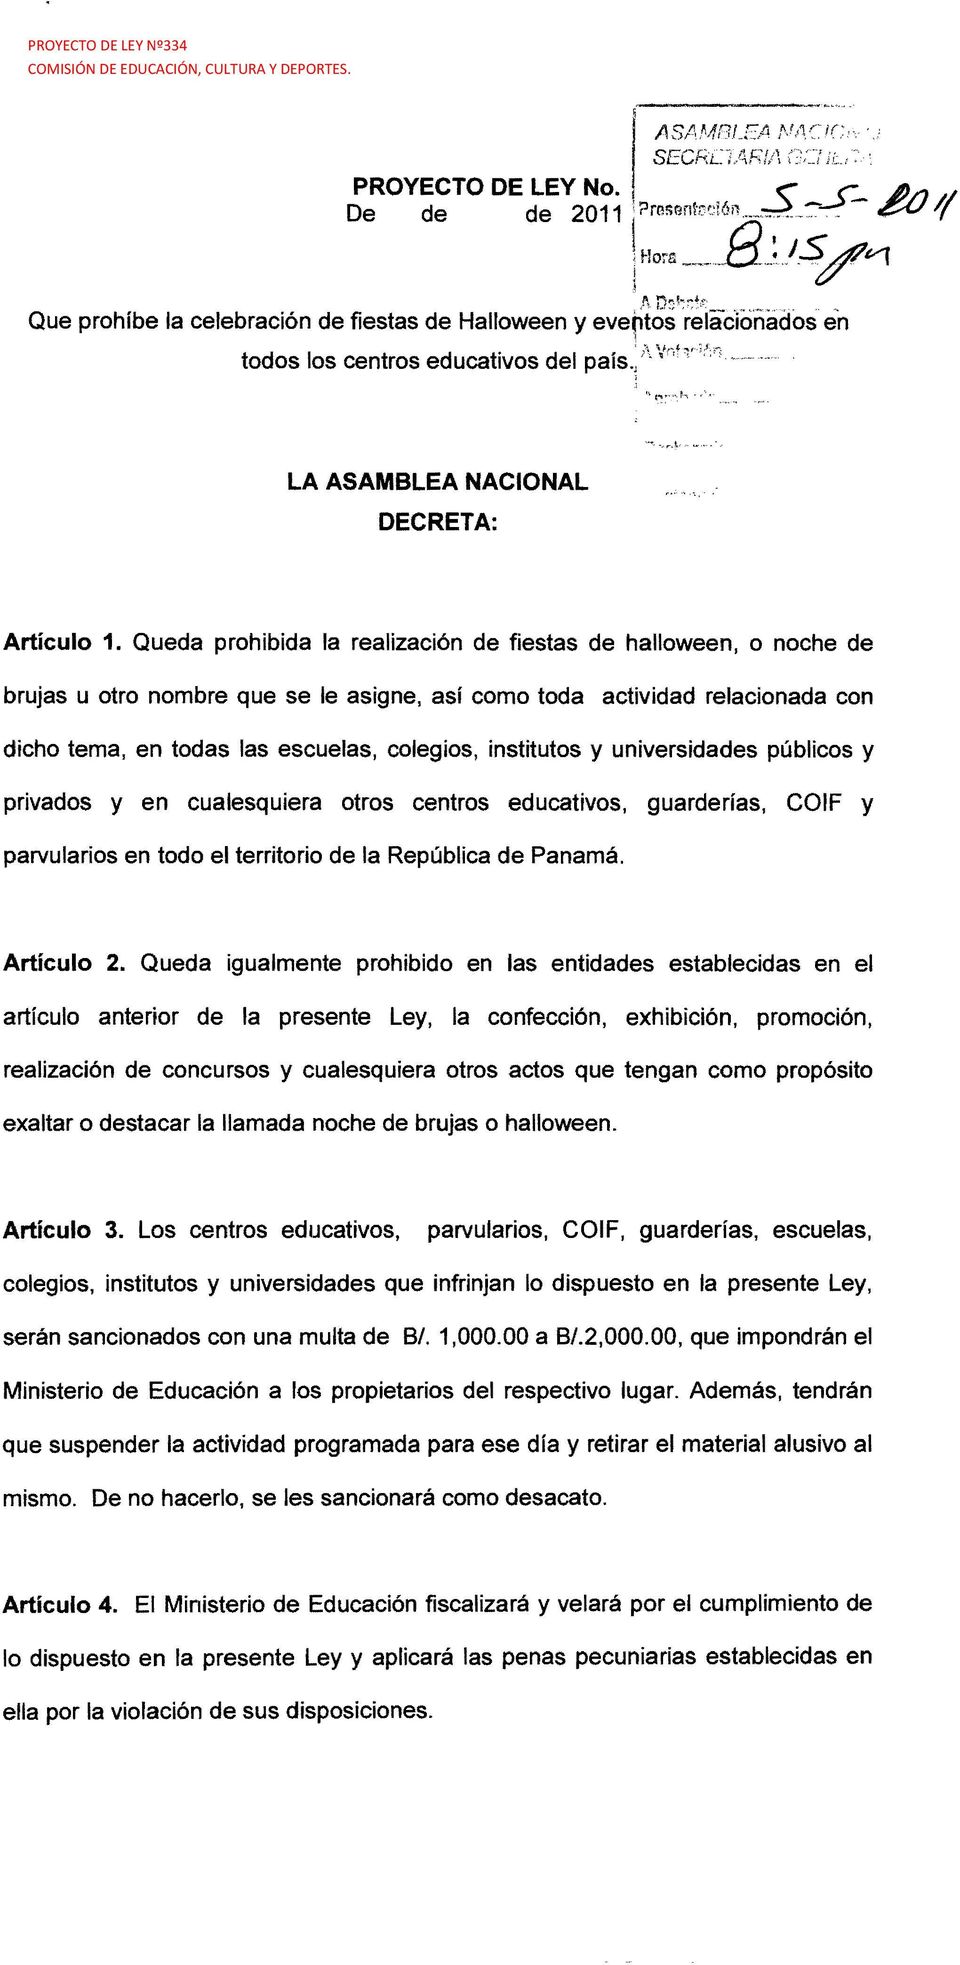 institutos y universidades públicos y privados y en cualesquiera otros centros educativos, guarderías, COIF y parvularios en todo el territorio de la República de Panamá. Artículo 2.